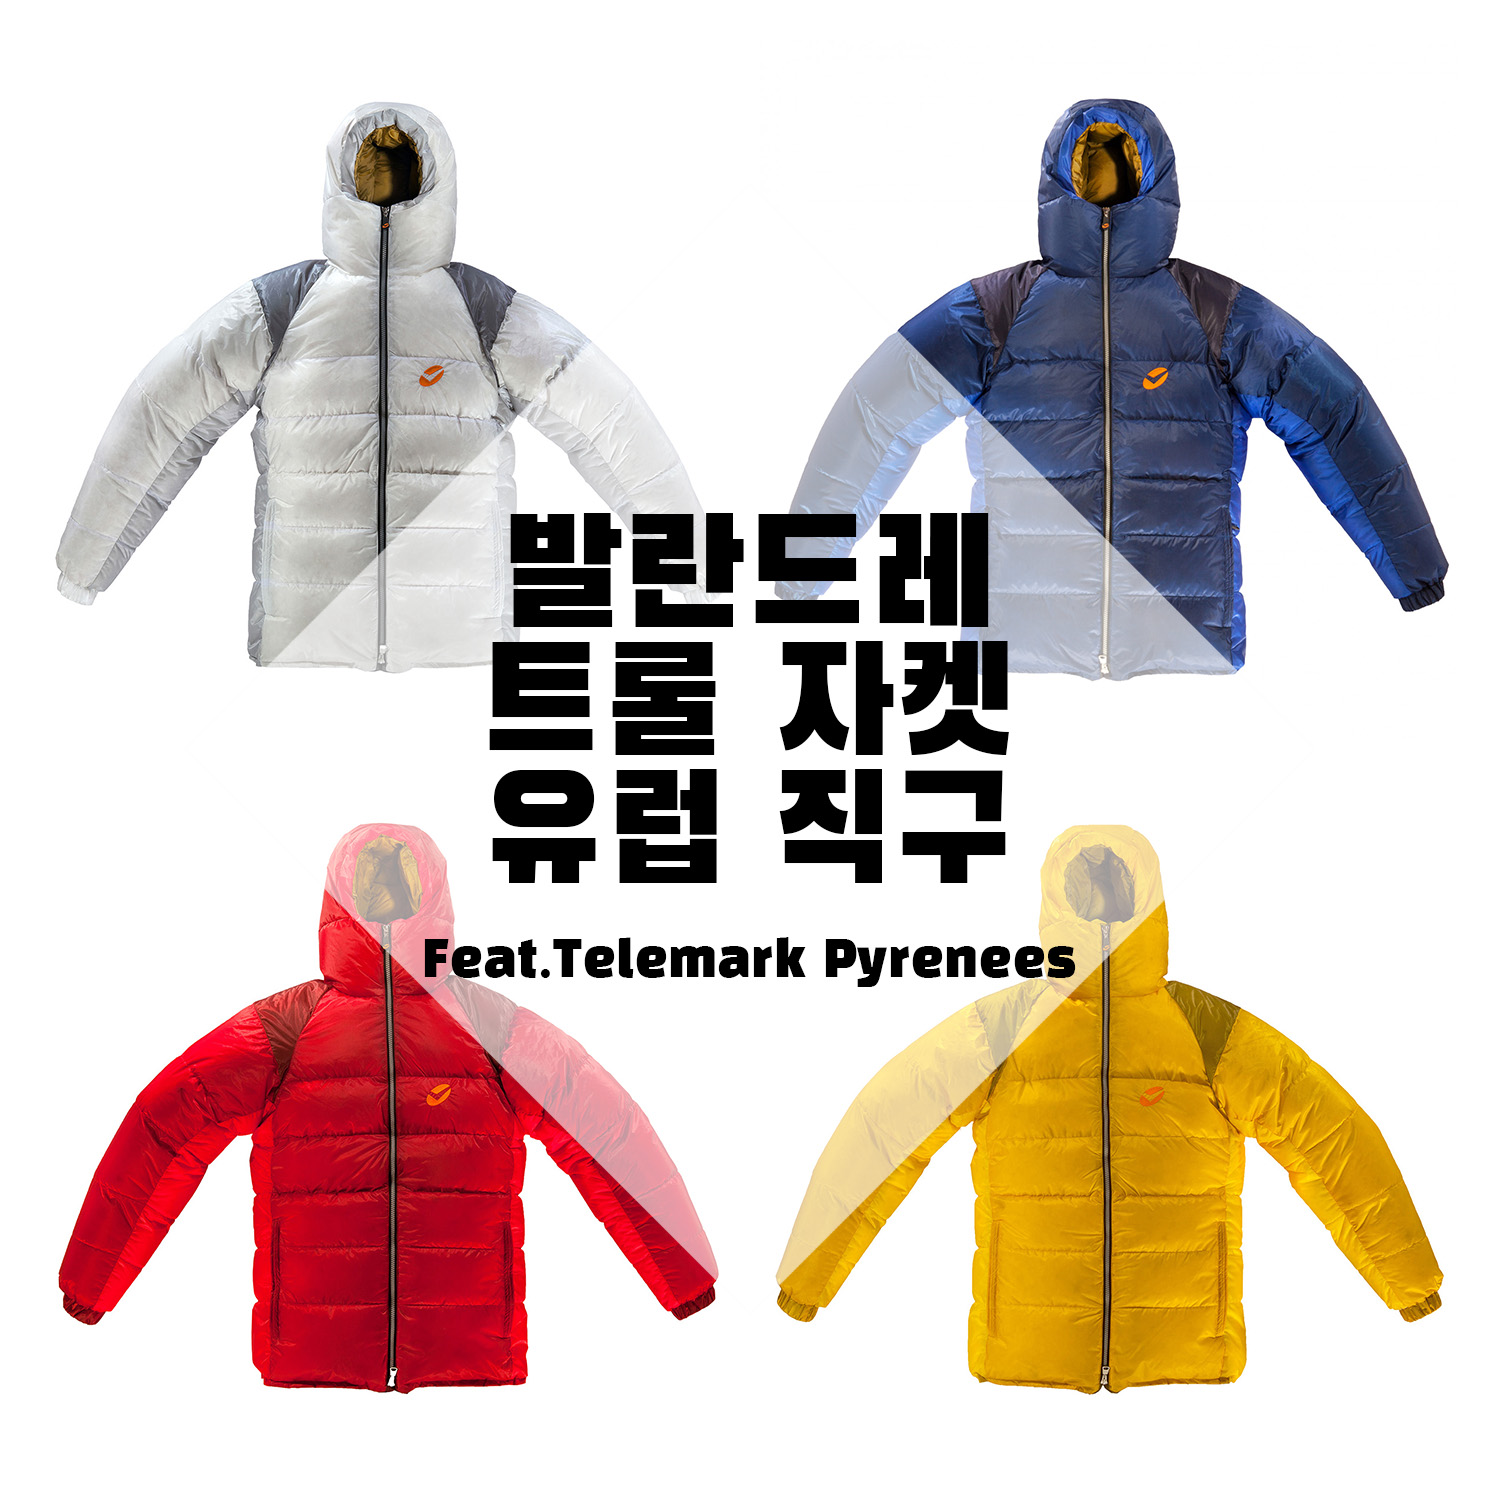 발란드레 트롤 자켓_ValandreTroll Jacket (구스 패딩) 유럽 직구로 저렴하게 구매하는 팁 + 원산지 증명 서류 요청 및  관세 면제 오류 해결 (feat,Telemark Pyrenees)